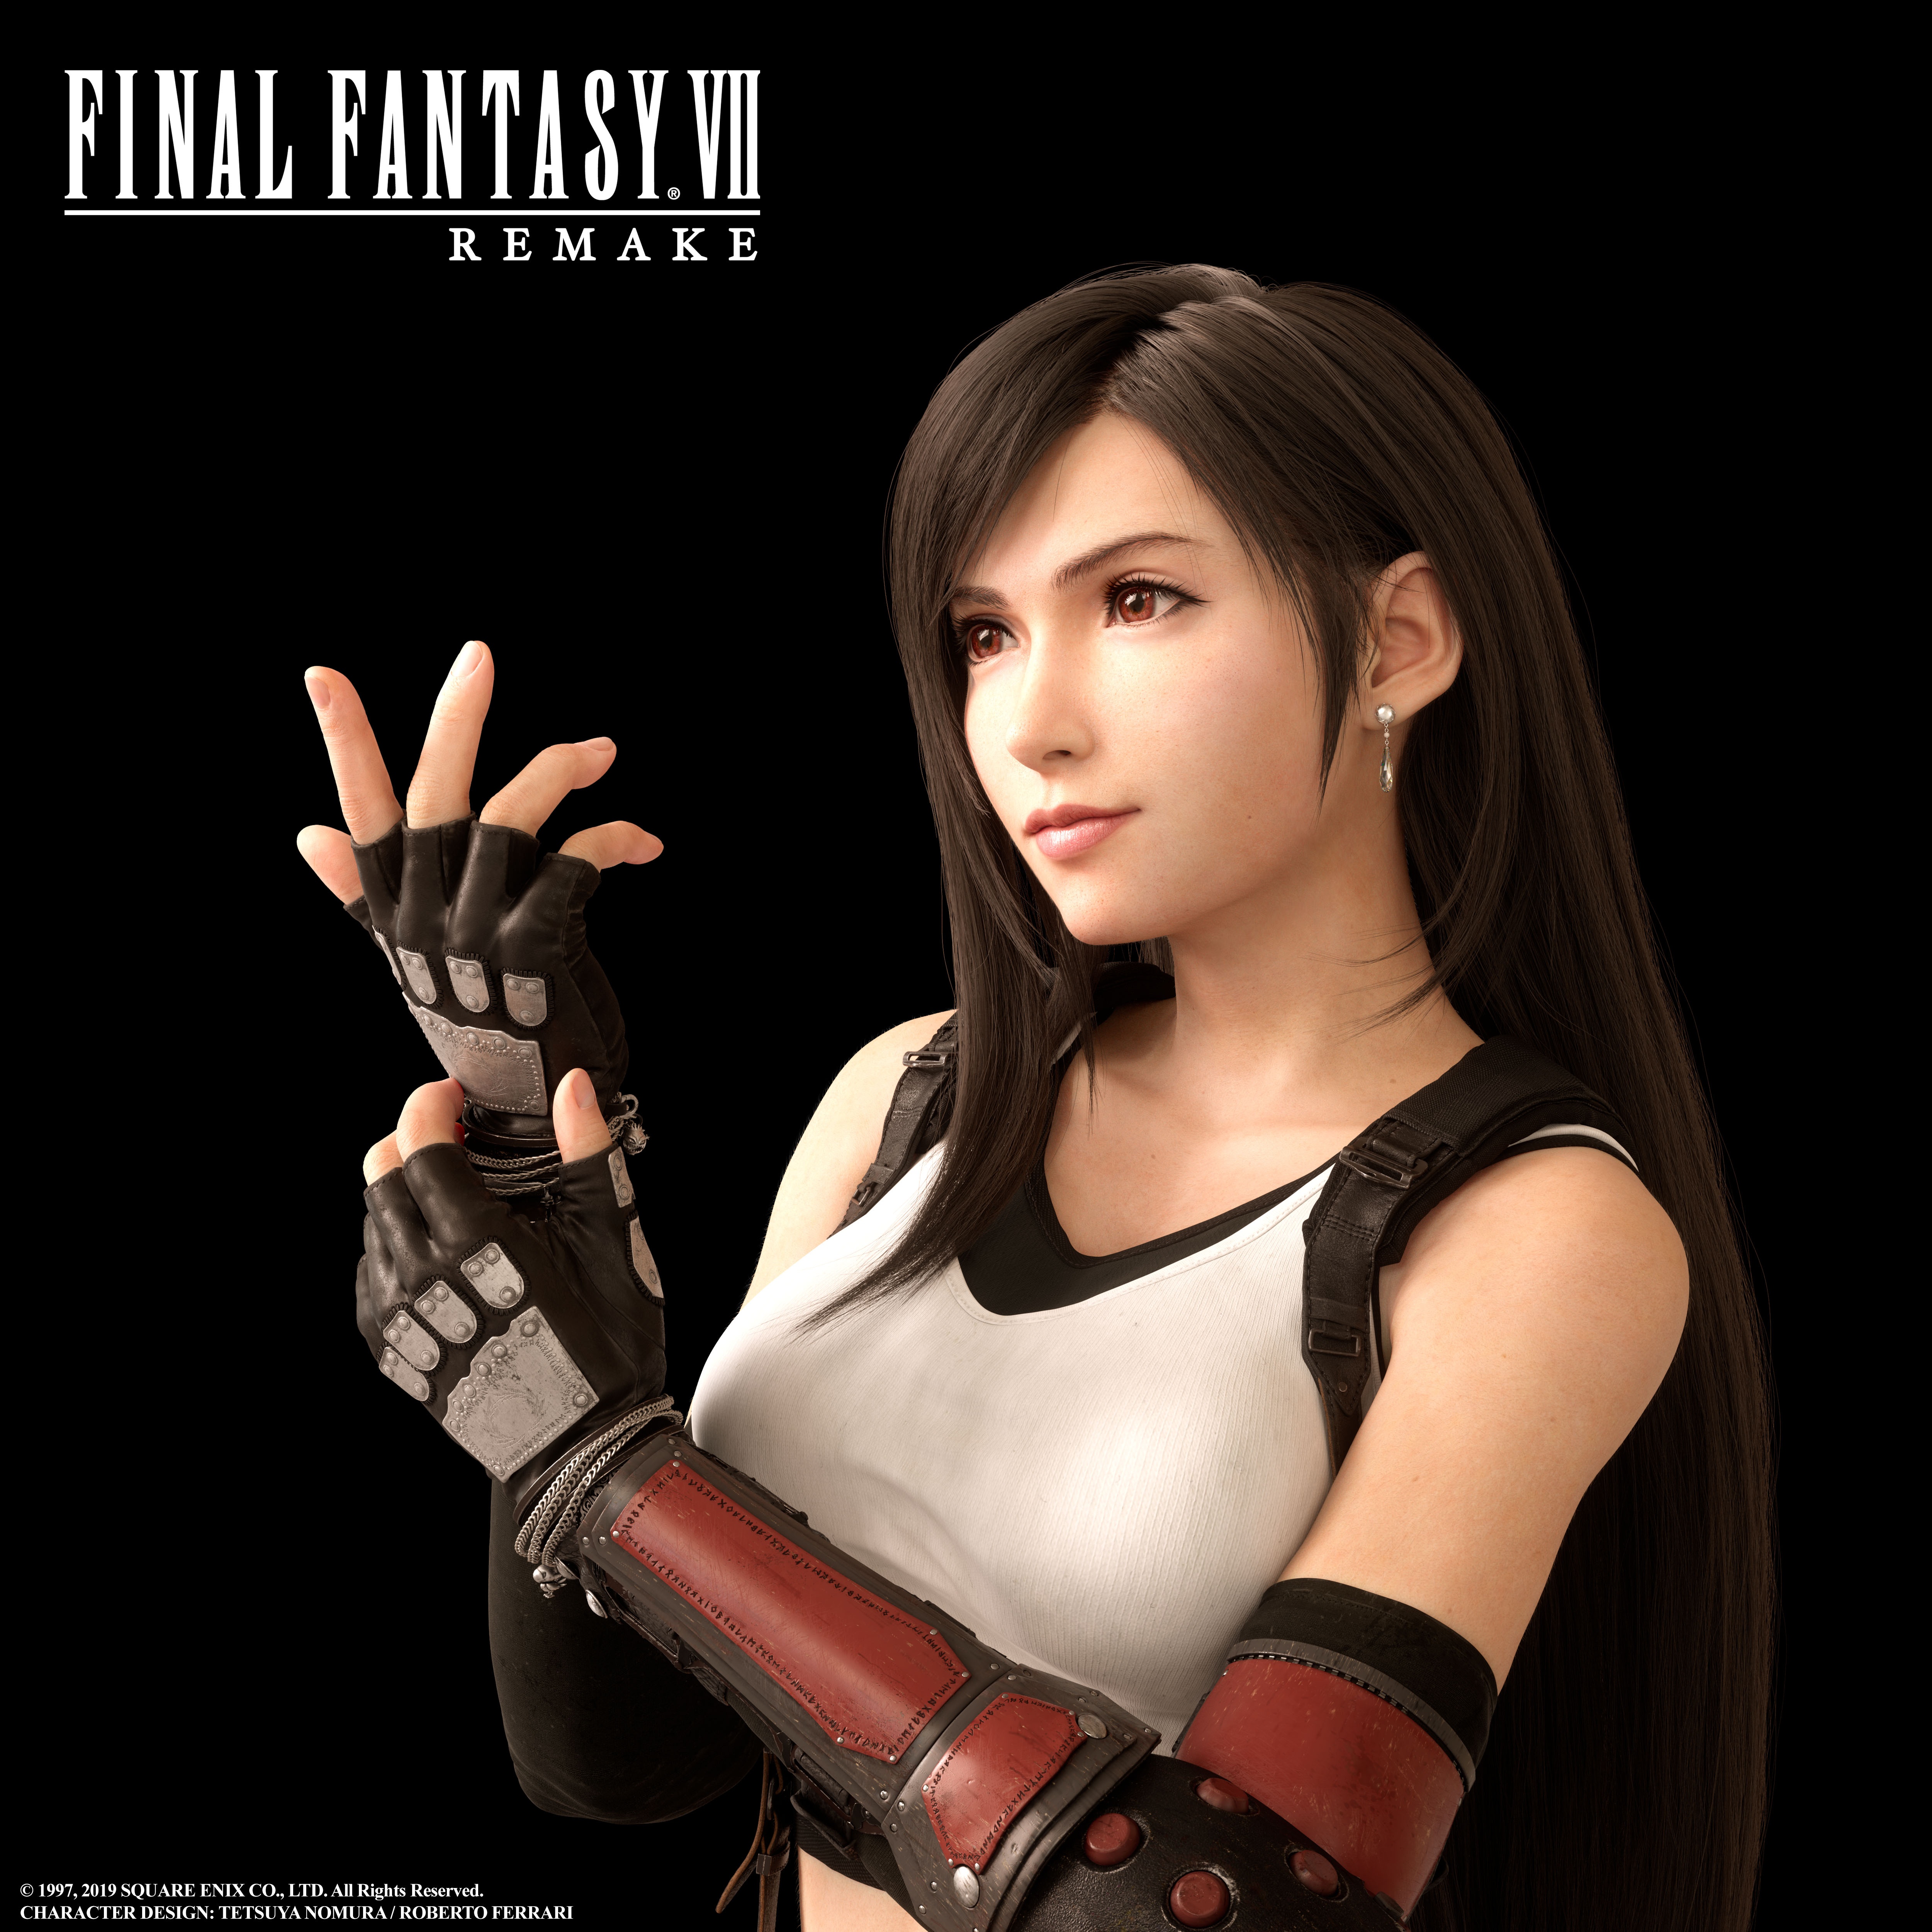 Final Fantasy VII Remake arte dos personagens